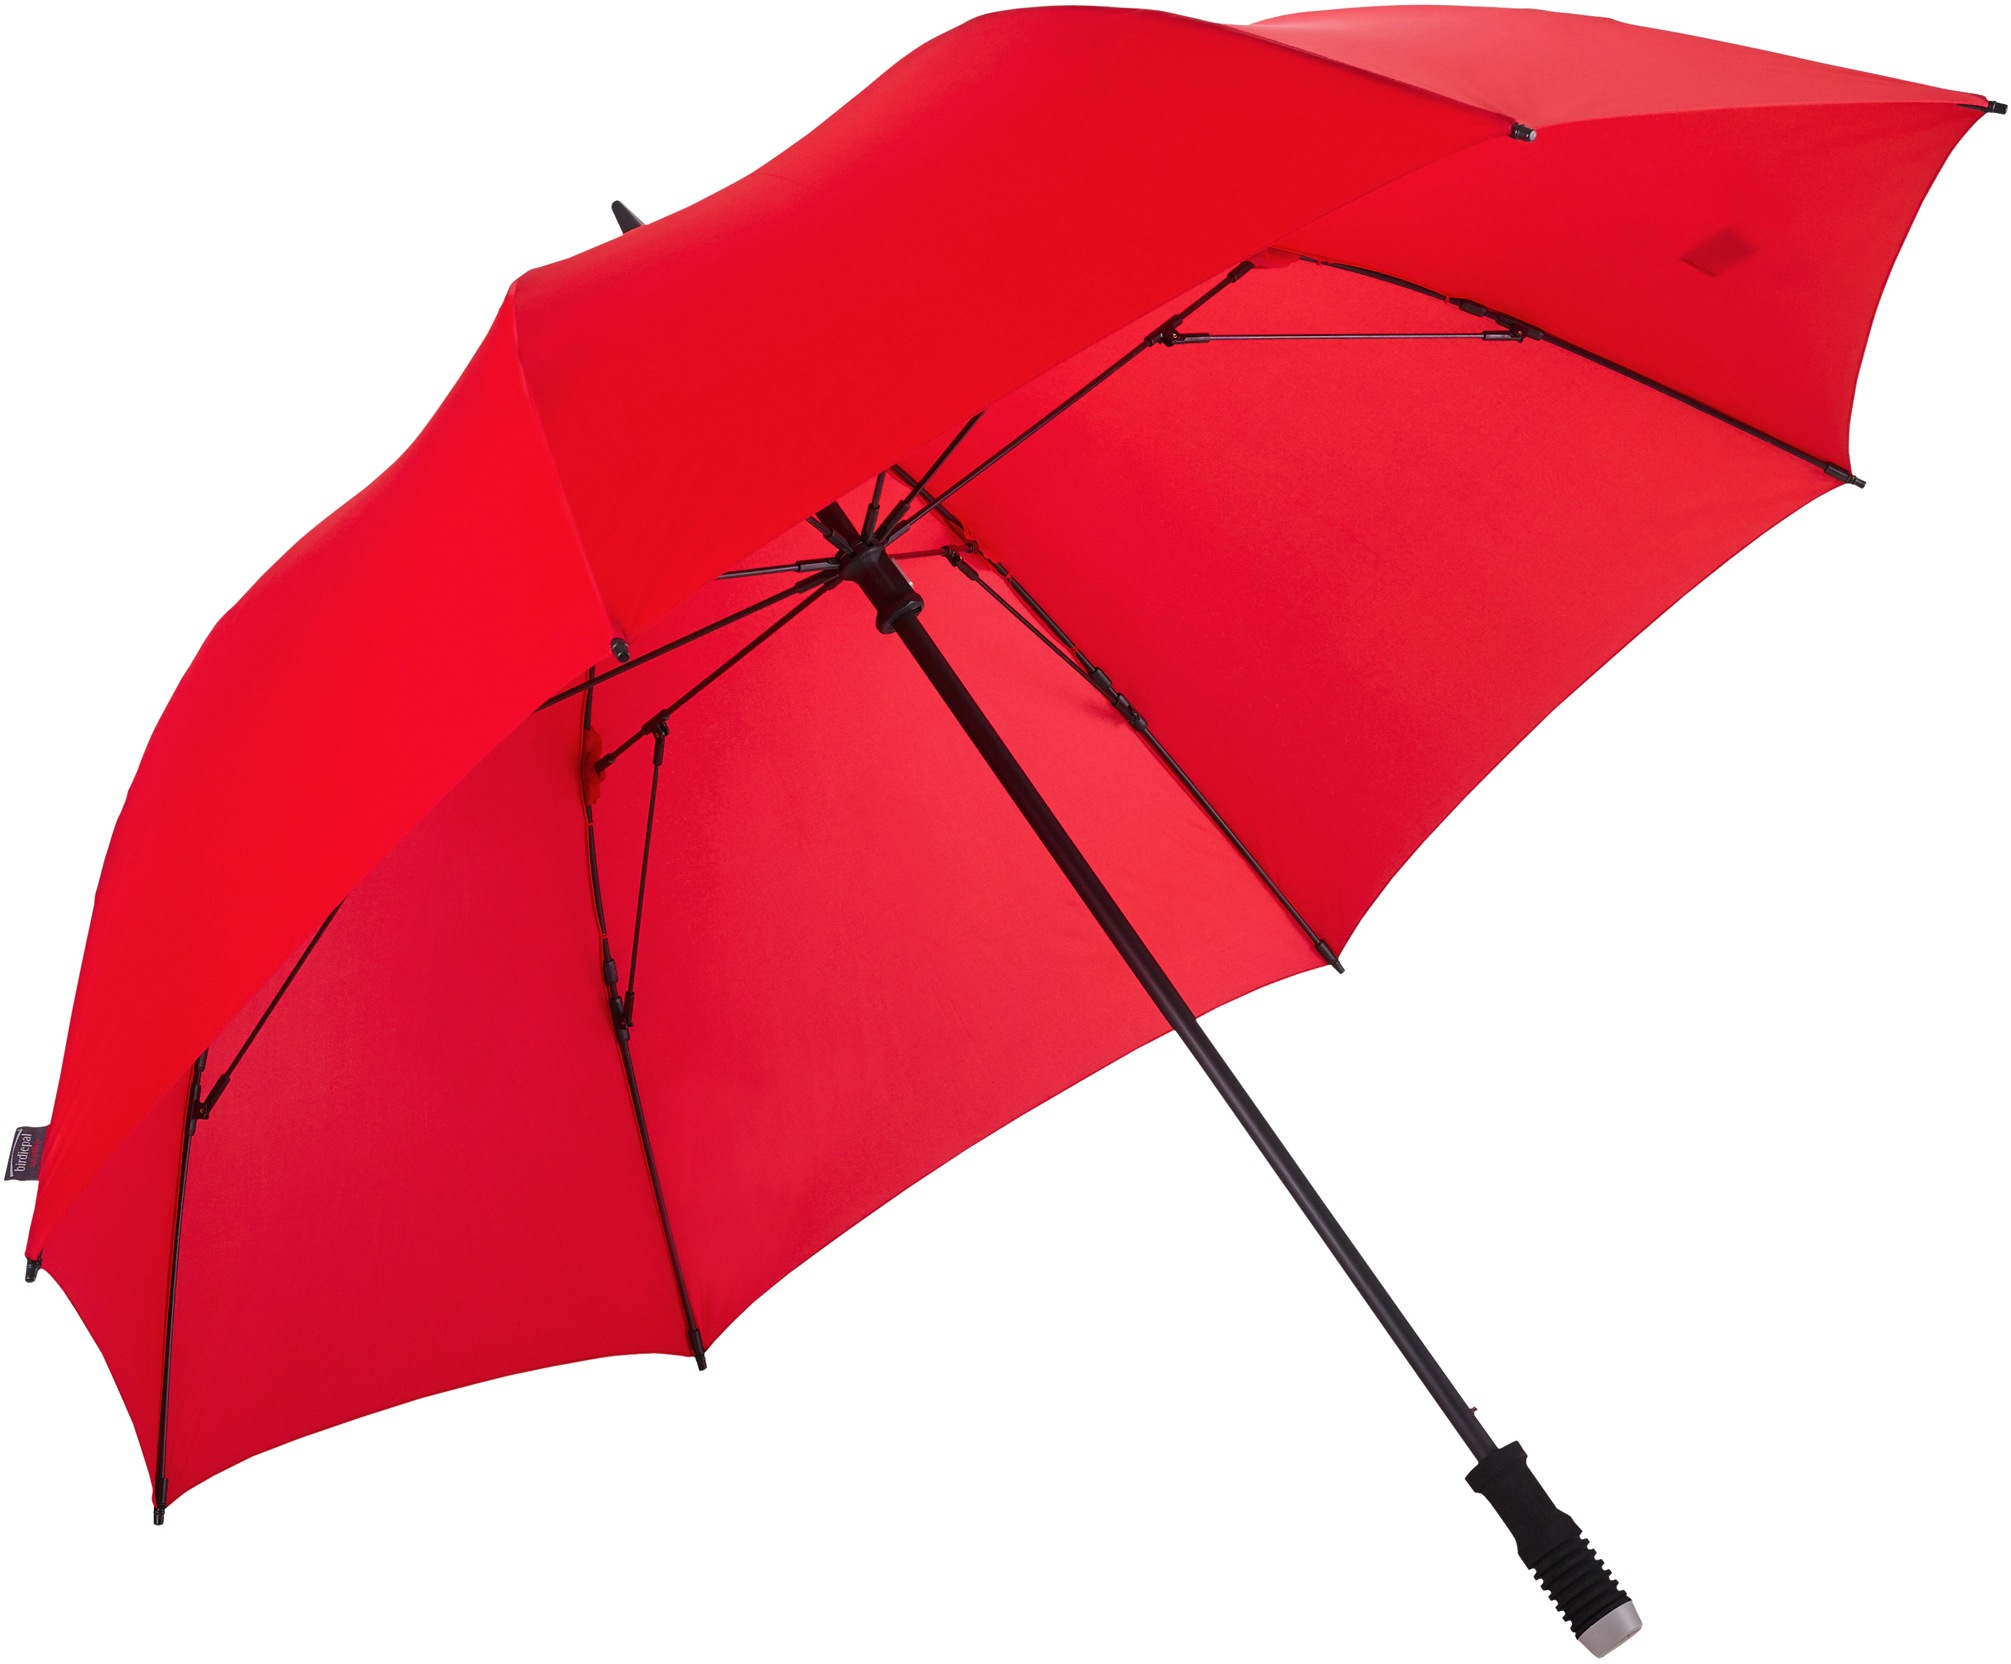 EuroSCHIRM Partnerschirm "birdiepal windflex", Regenschirm für Zwei, mit extra großem Dach und Windflex-System